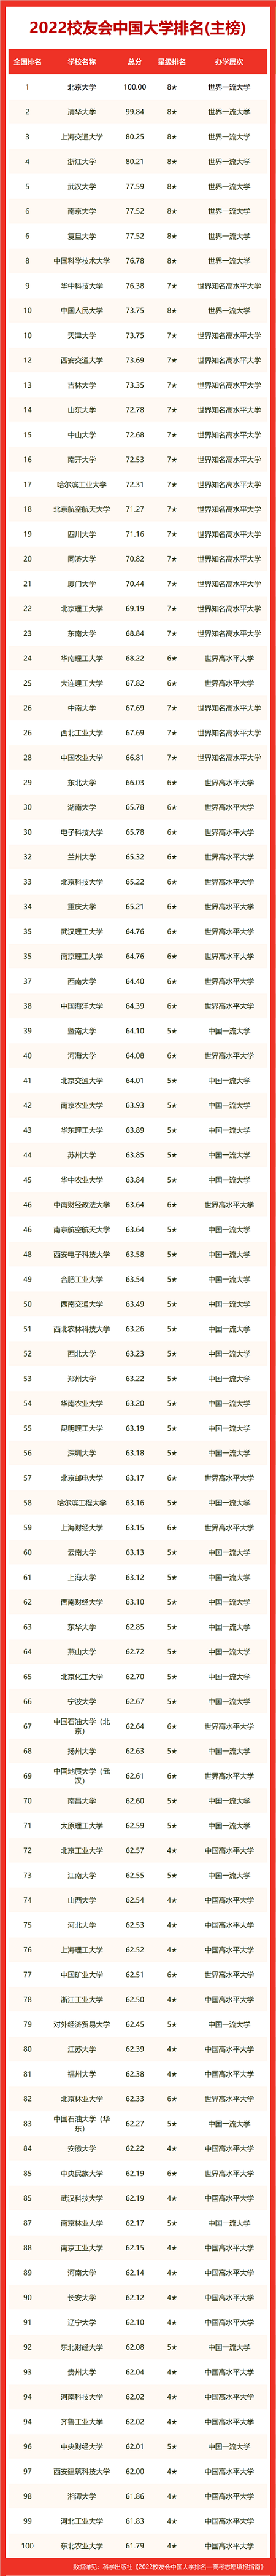 2022年中国大学最新排名榜 100强院校名单